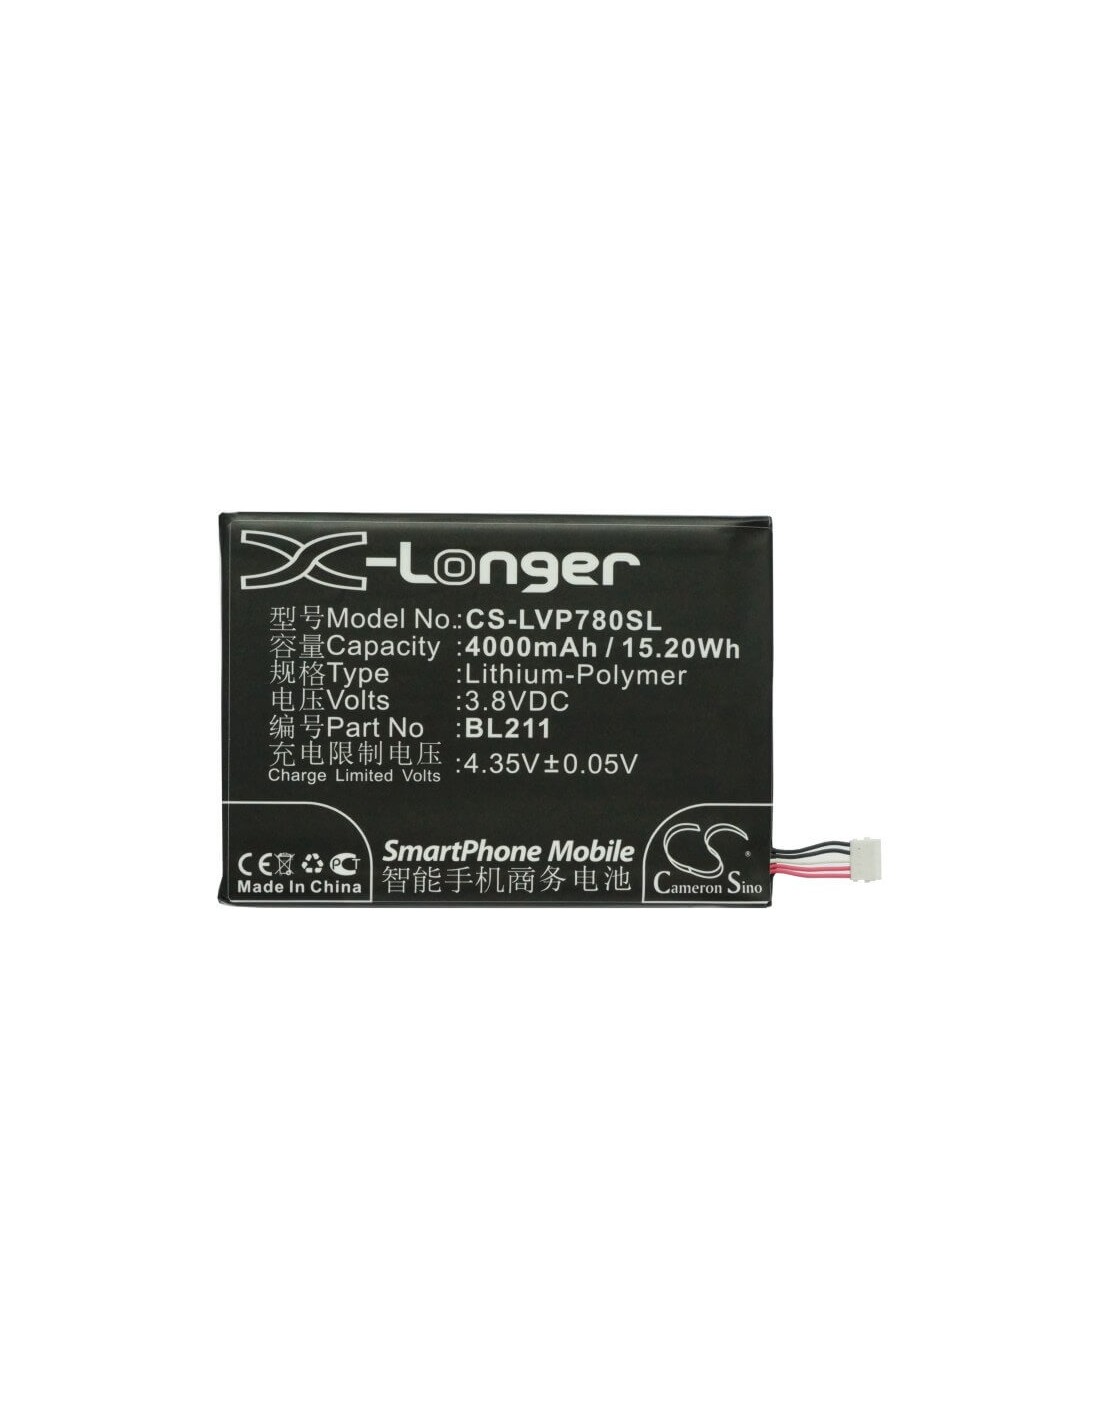 Battery for Lenovo P780 3.8V, 4000mAh - 15.20Wh